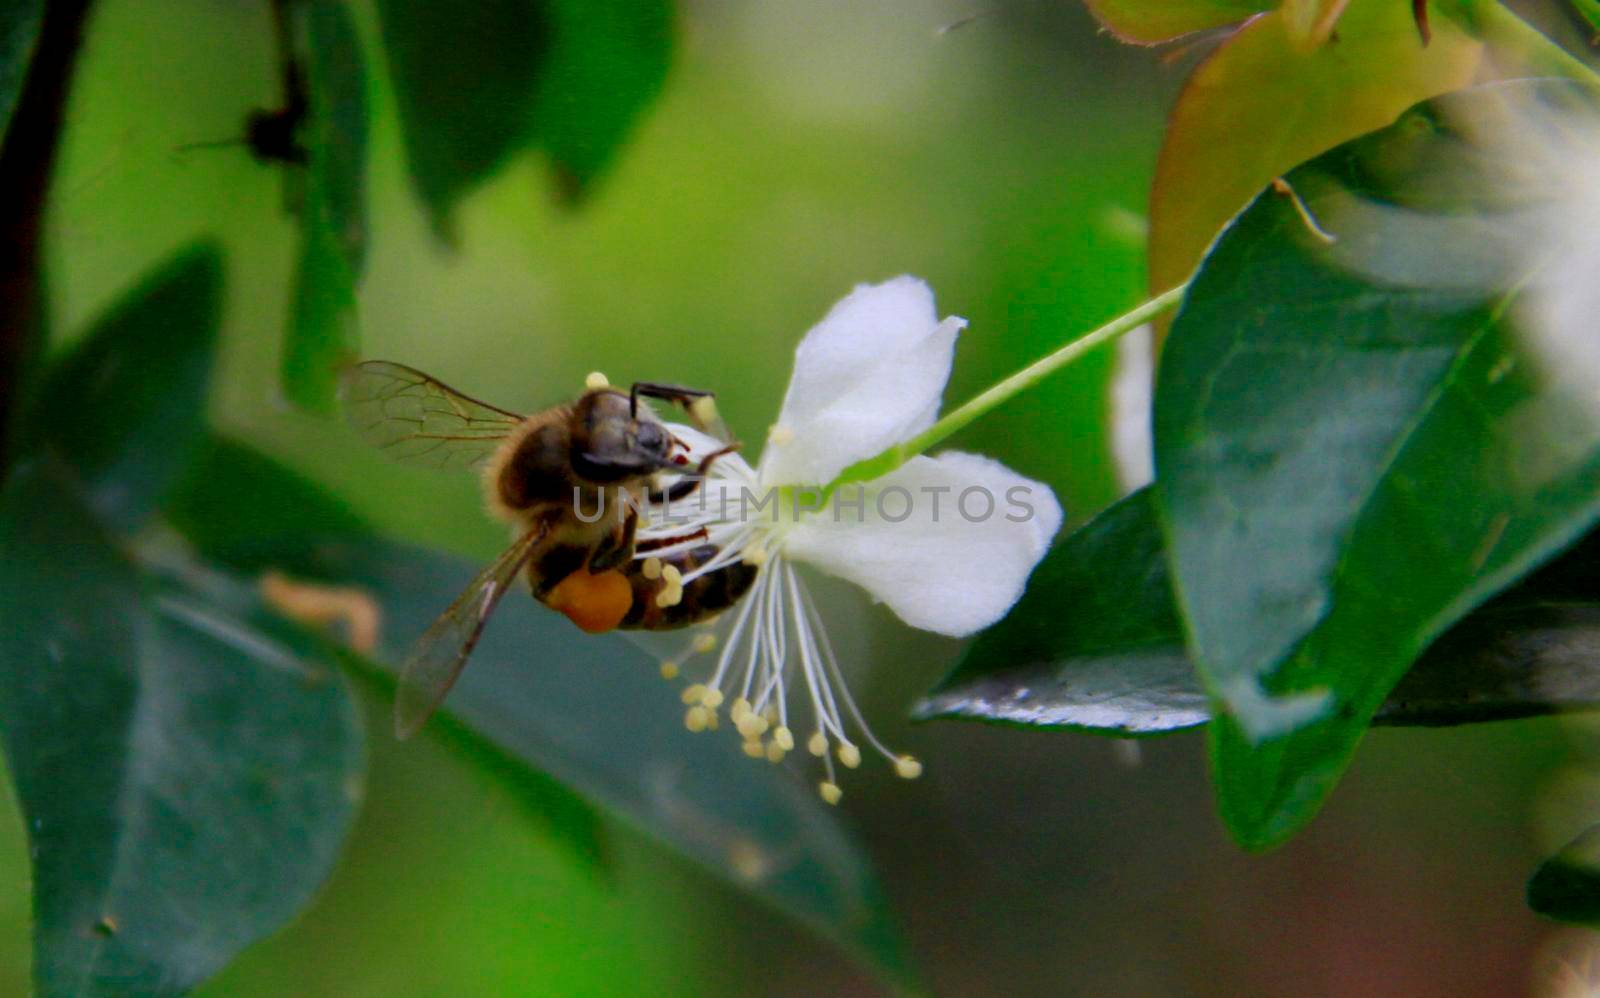 worker bee collecting pollen in flower by joasouza